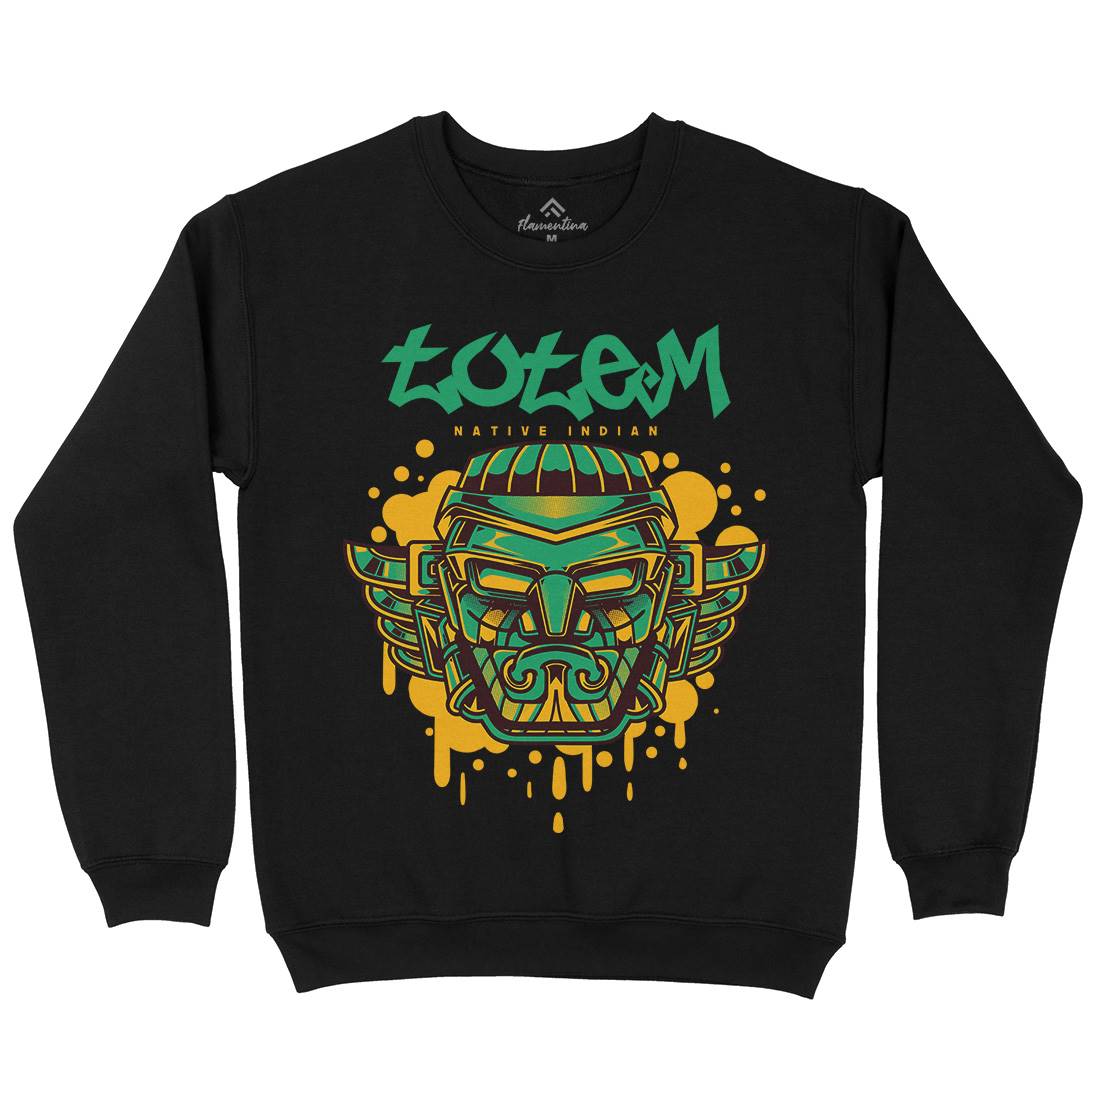 Totem Kids Crew Neck Sweatshirt American D865